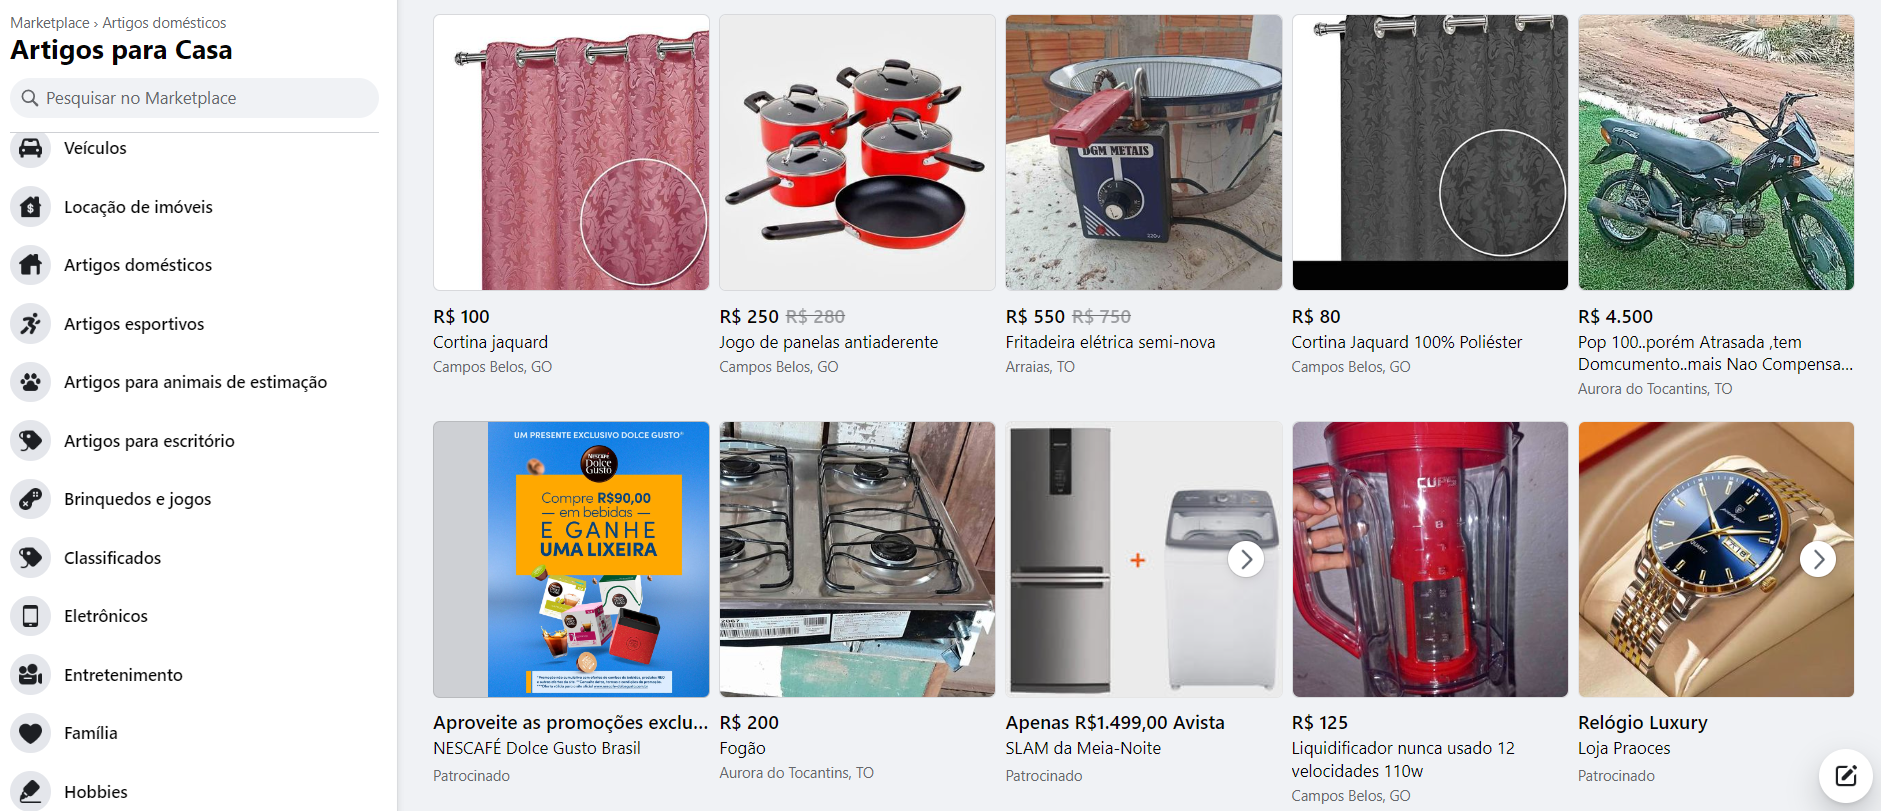 catalogo de produtos: imagem da página de catálogo de produtos de artigos domésticos